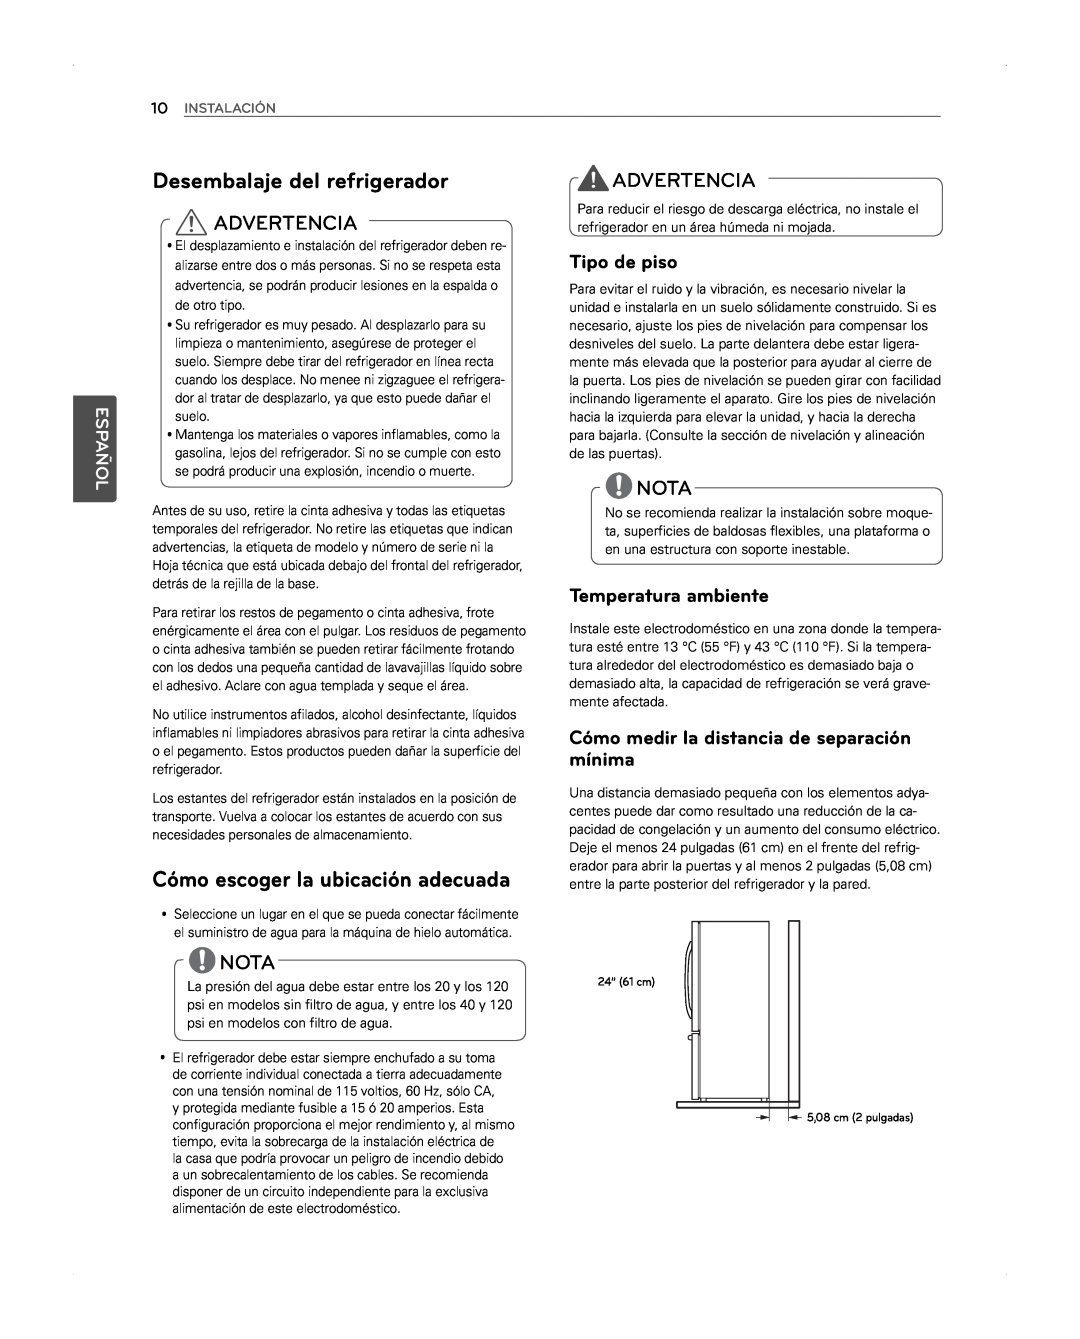 LG Electronics LFX31945ST Desembalaje del refrigerador, Cómo escoger la ubicación adecuada, Advertencia, Nota, Español 